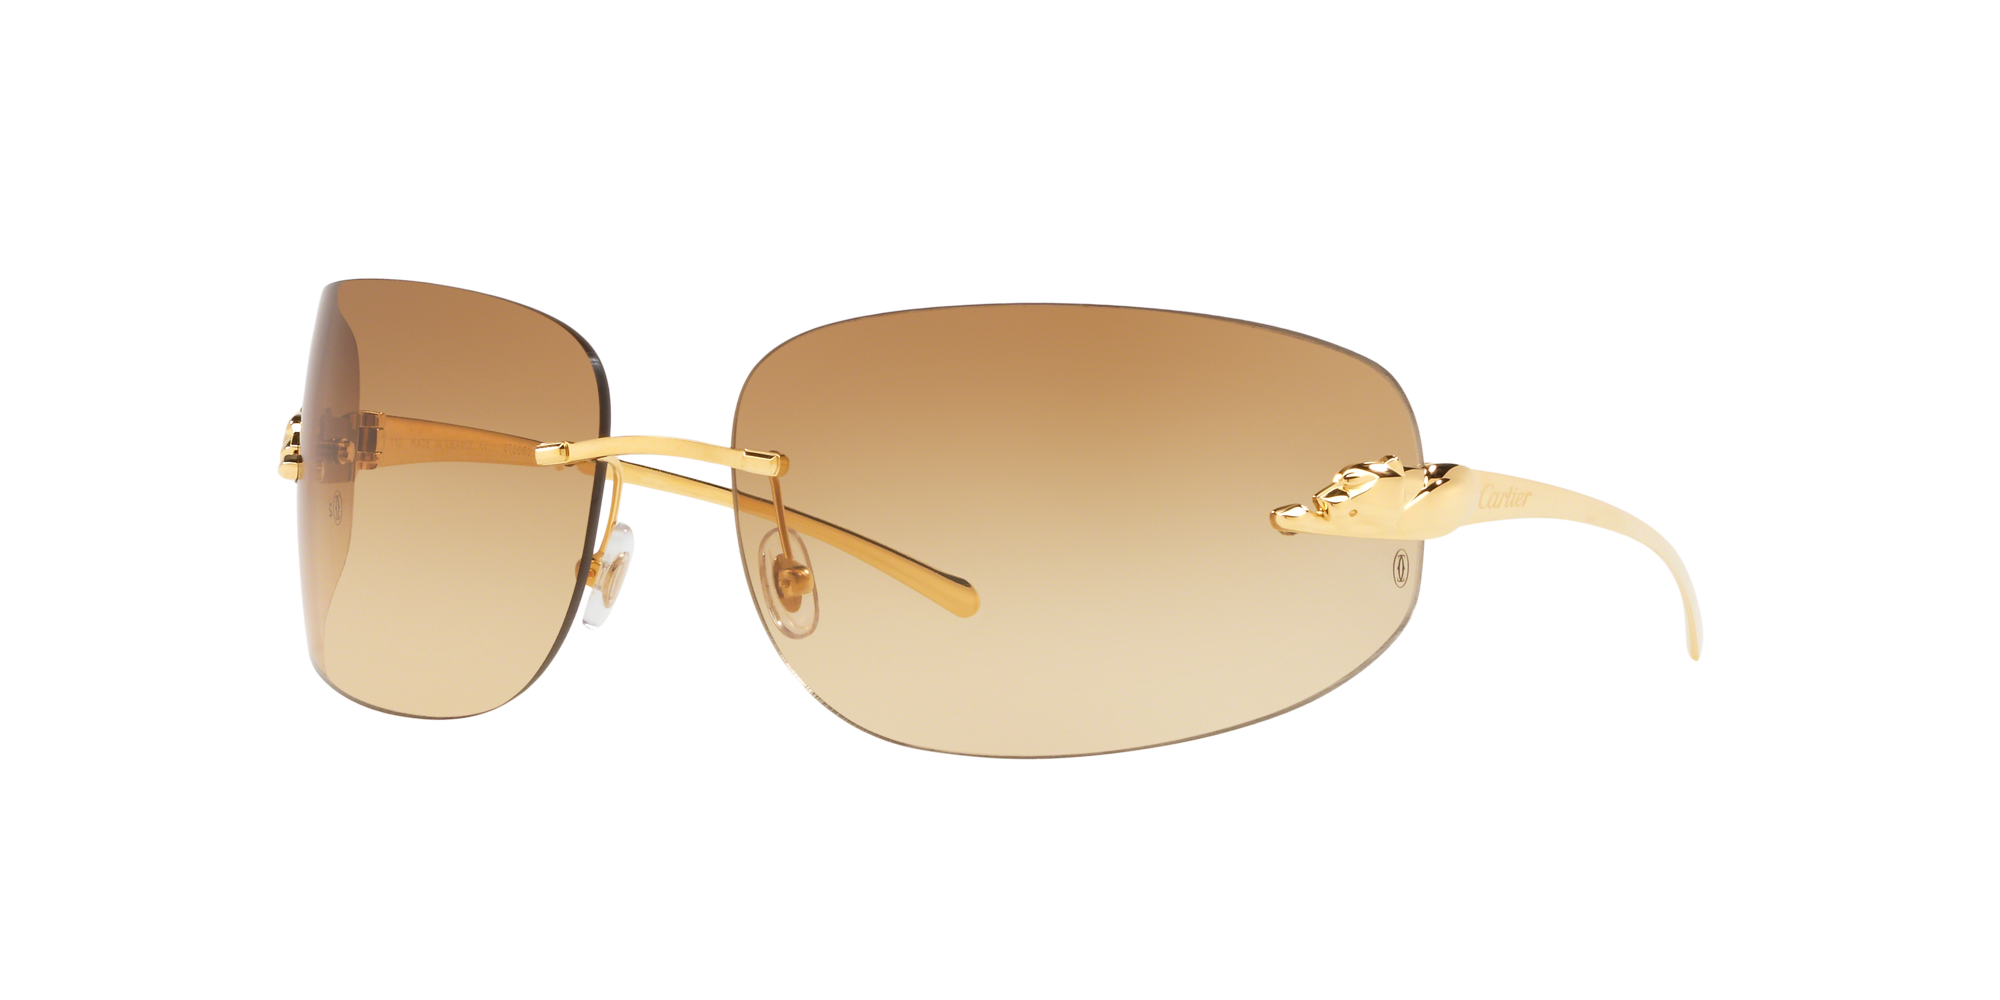 Cartier Aviator Sunglasses gift ideas he will love | Cartier aviator  sunglasses, Aviator sunglasses outfit, Aviator sunglasses mens